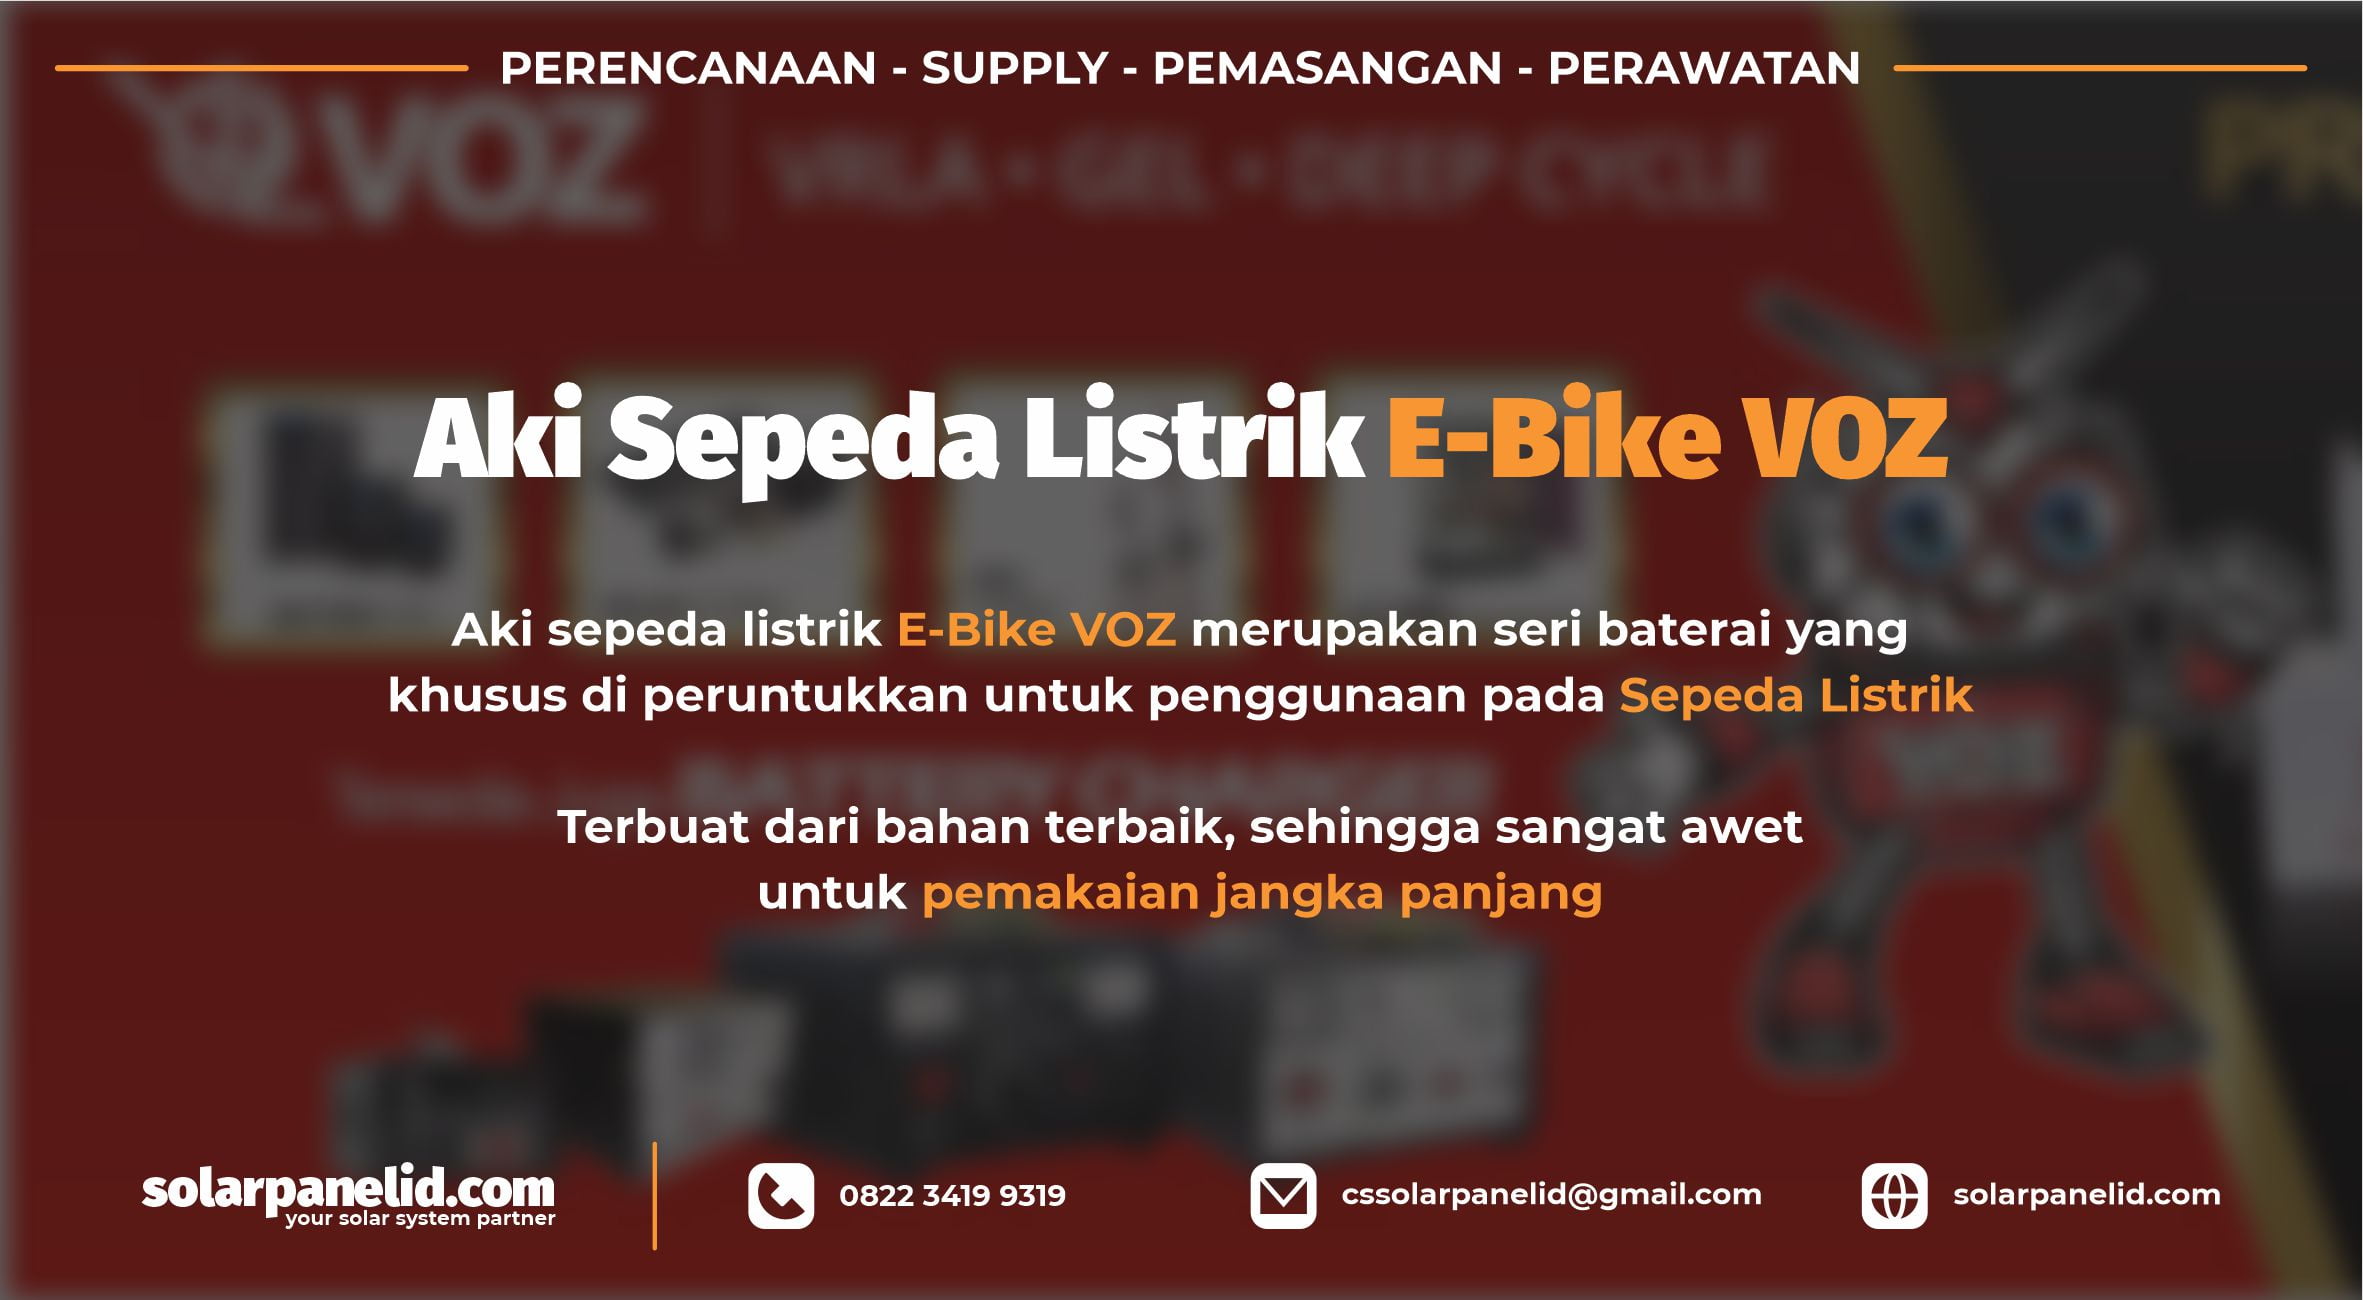 harga baterai e-bike voz 12v 24ah murah surabaya